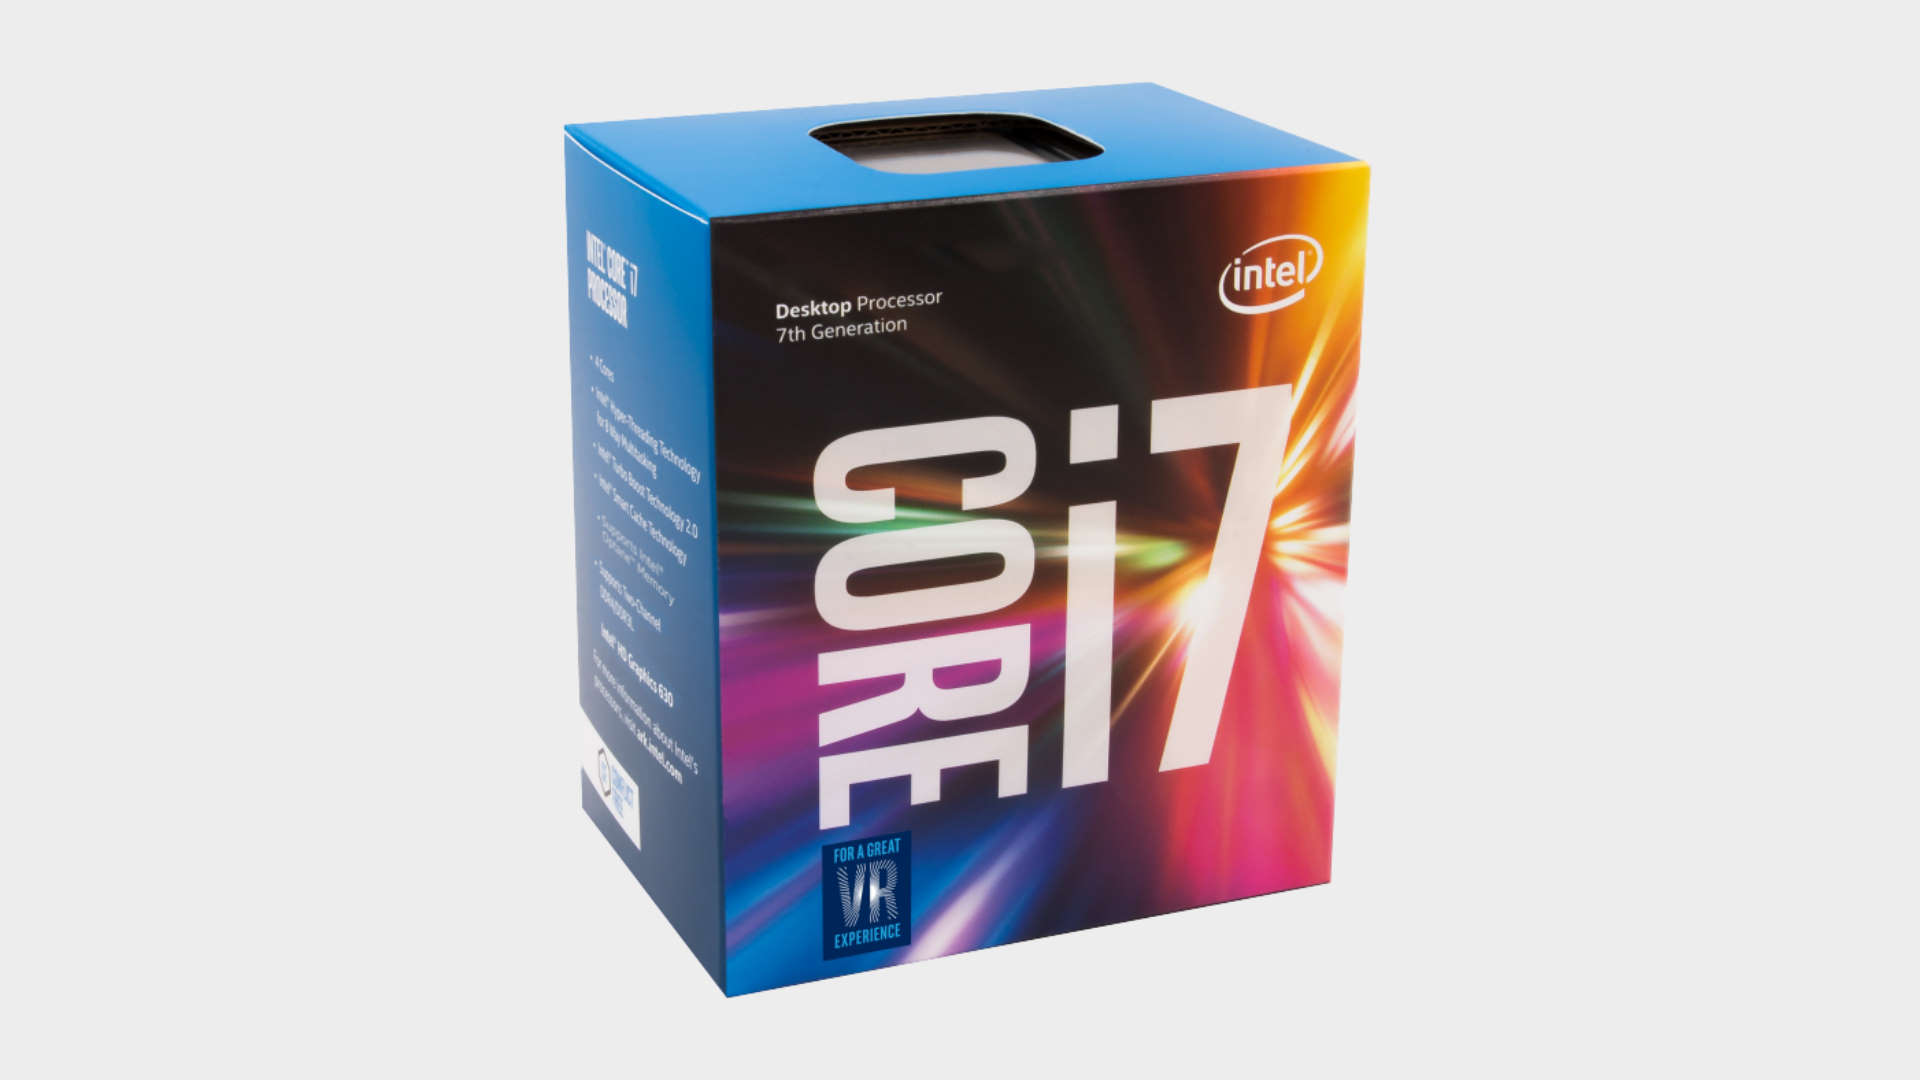 lekken Huisdieren as Should I buy an Intel Core i7 9700 CPU? | PC Gamer